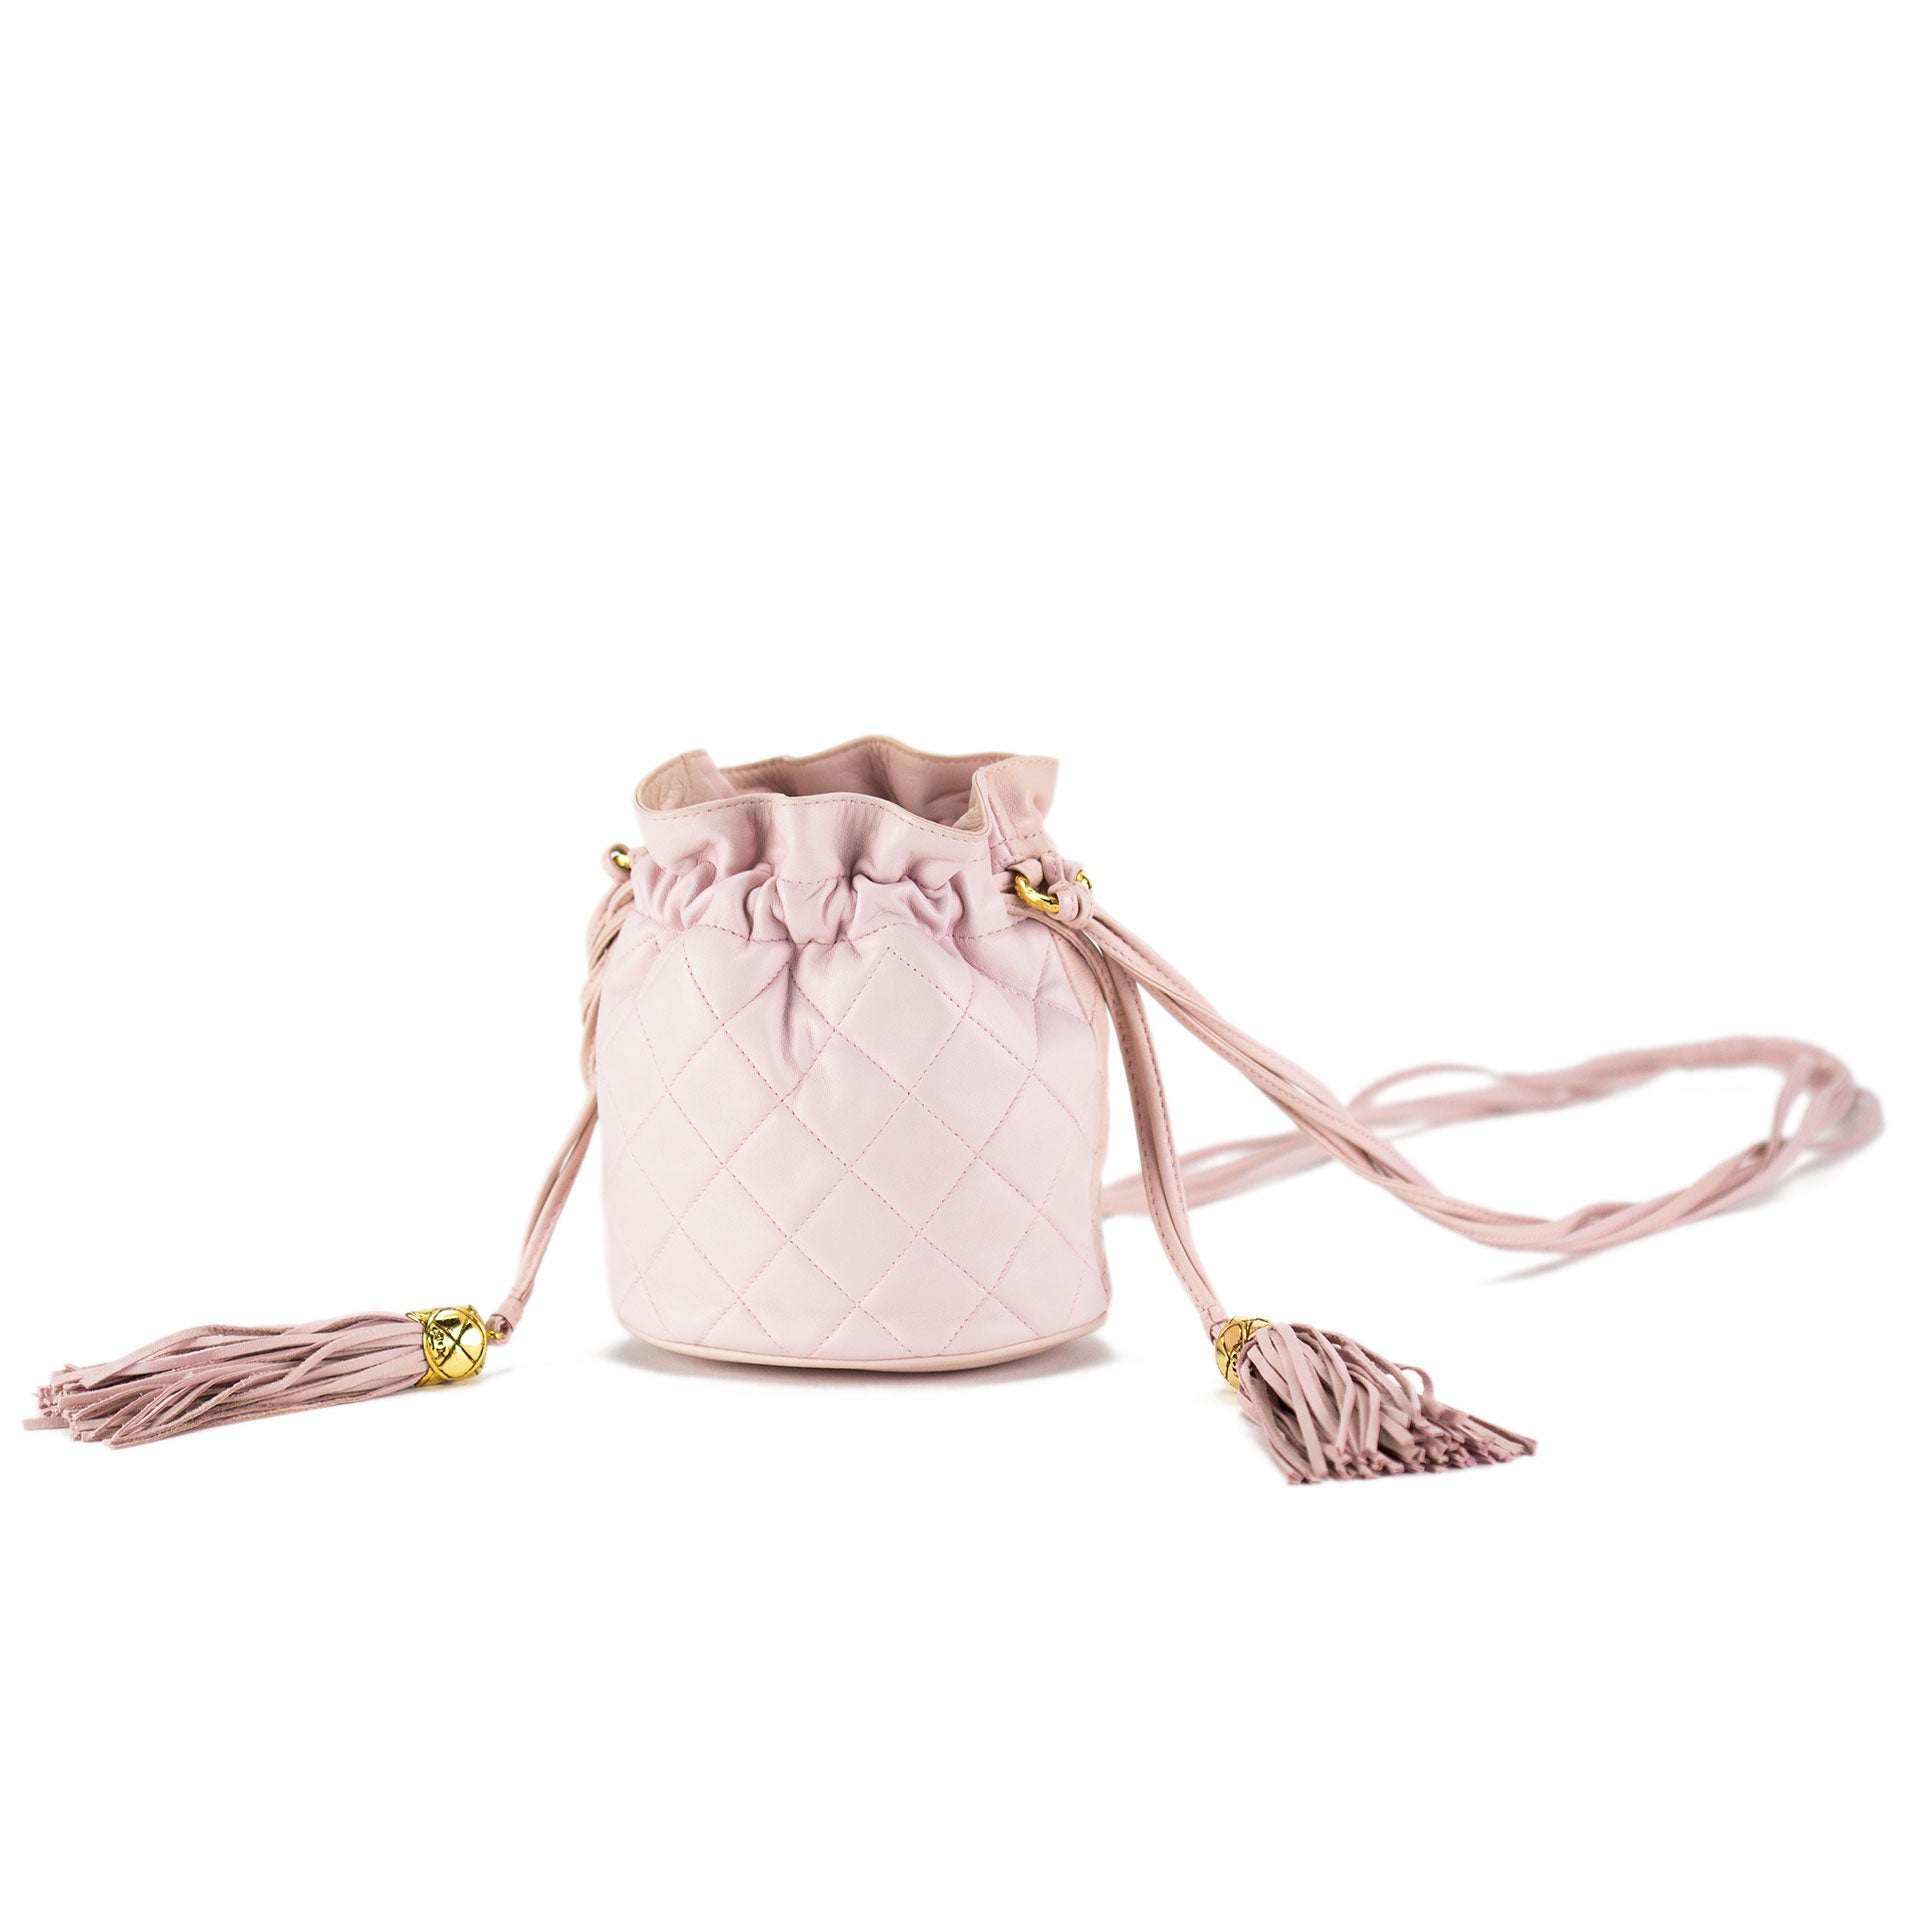 pink mini chanel bag vintage